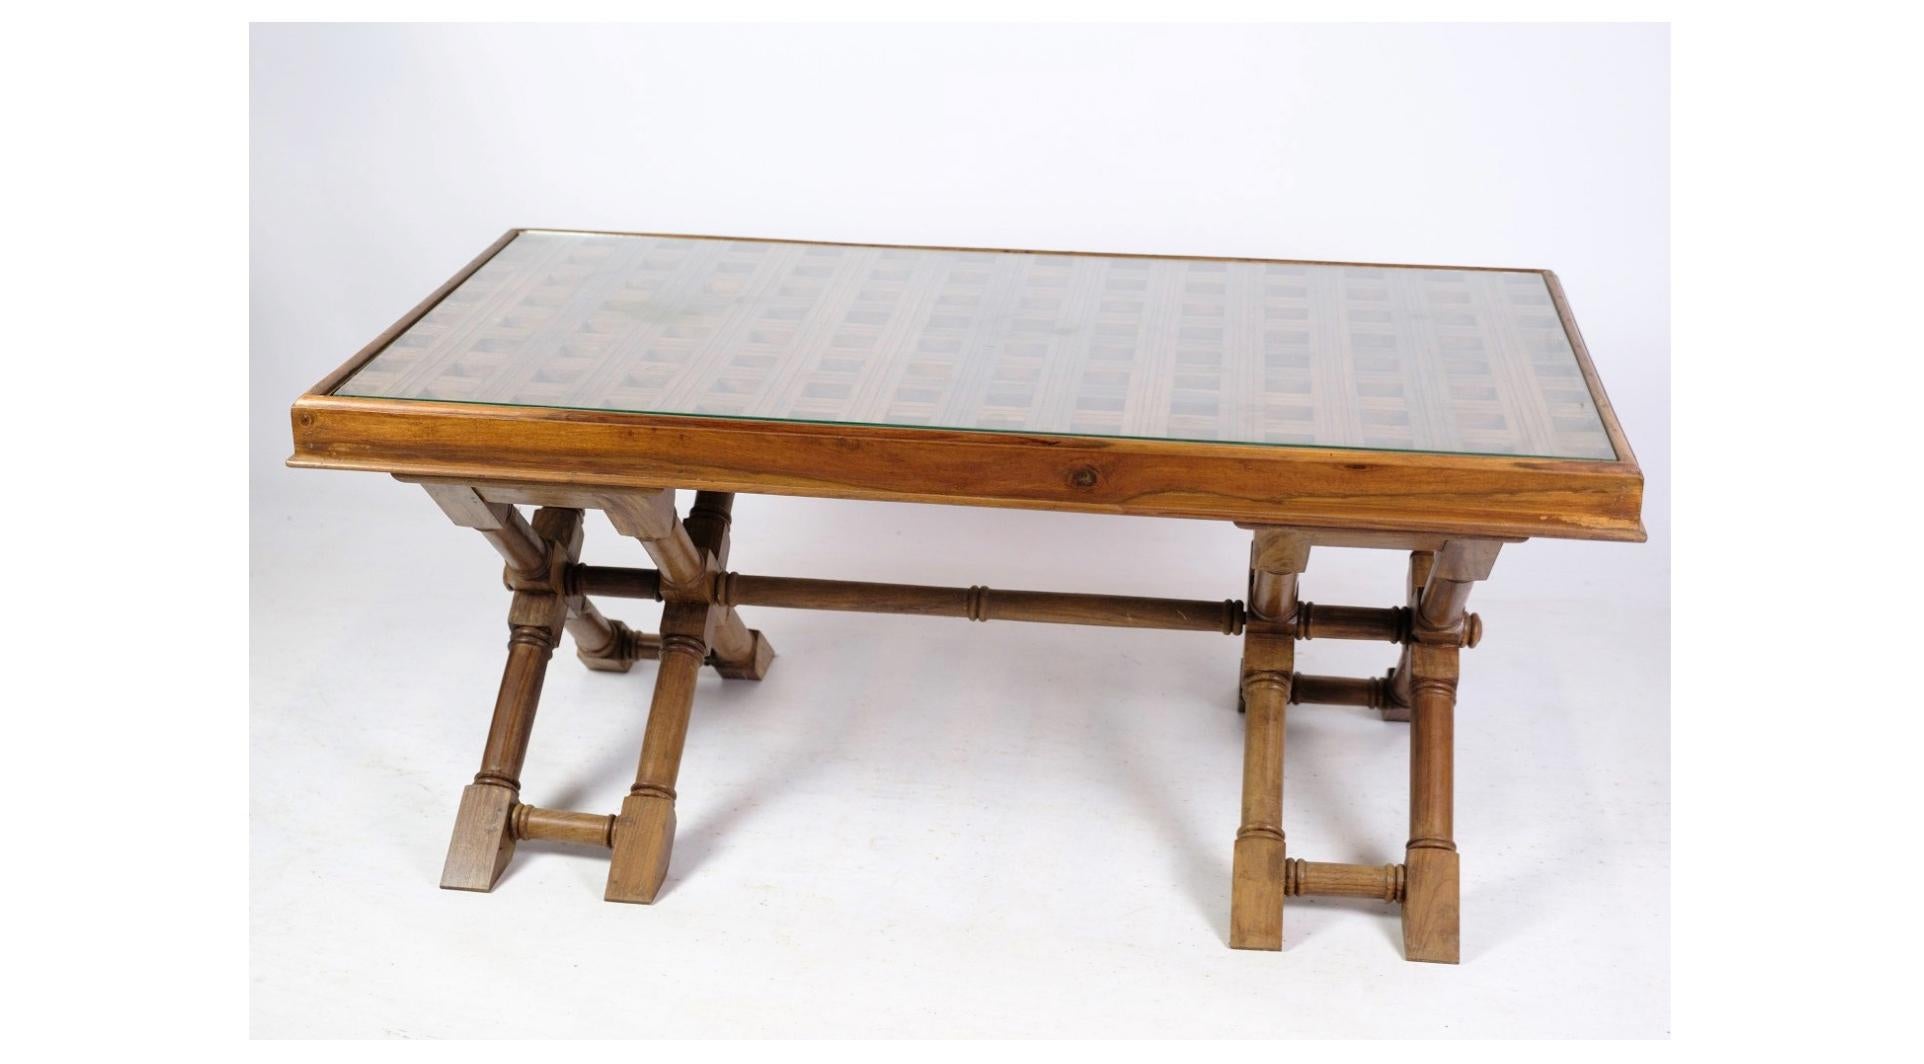 La table basse en bois foncé avec un plateau en verre datant des années 1960 est un classique du mobilier moderne du milieu du siècle qui dégage un style et une sophistication intemporels. Fabriquée en bois riche et sombre, cette table basse